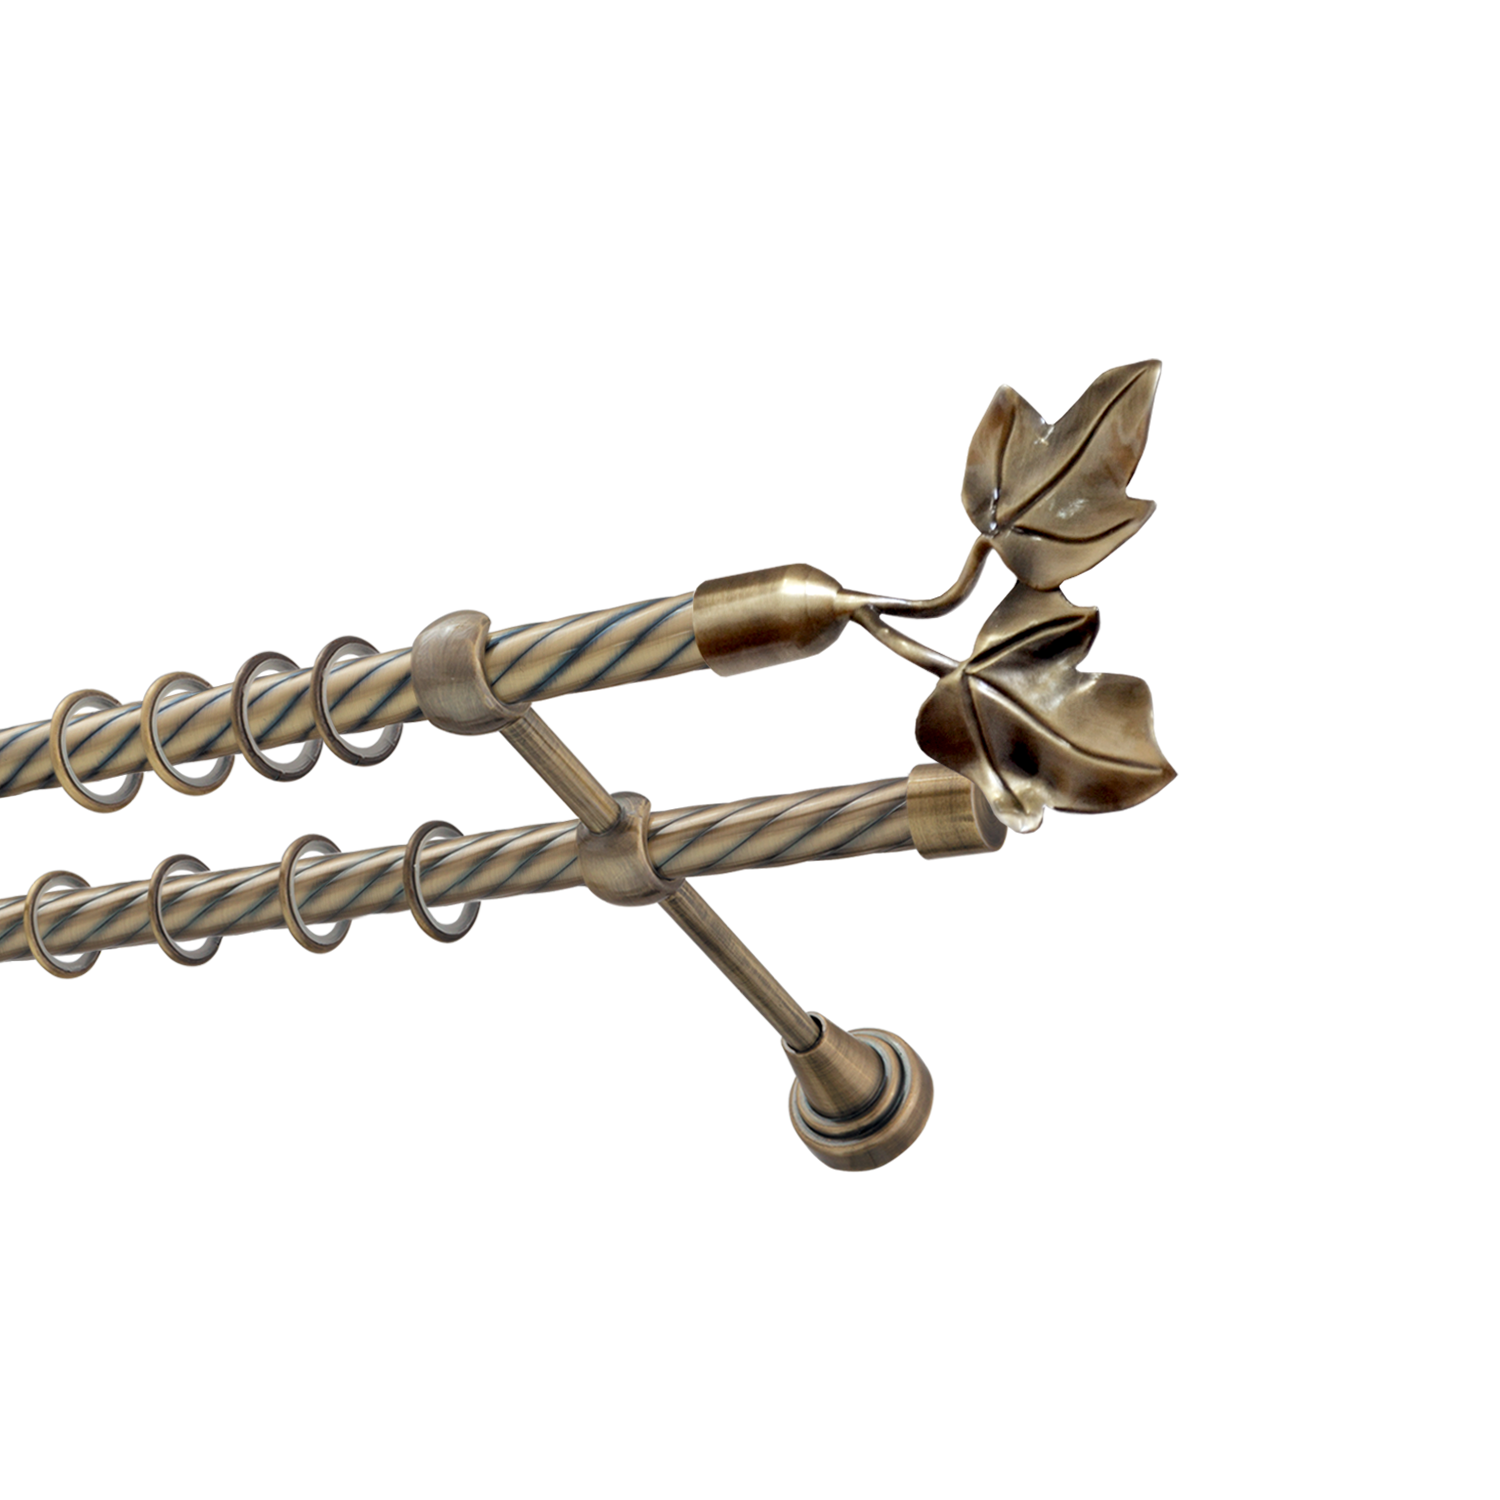 Металлический карниз для штор Листья, двухрядный 16/16 мм, бронза, витая штанга, длина 180 см - фото Wikidecor.ru